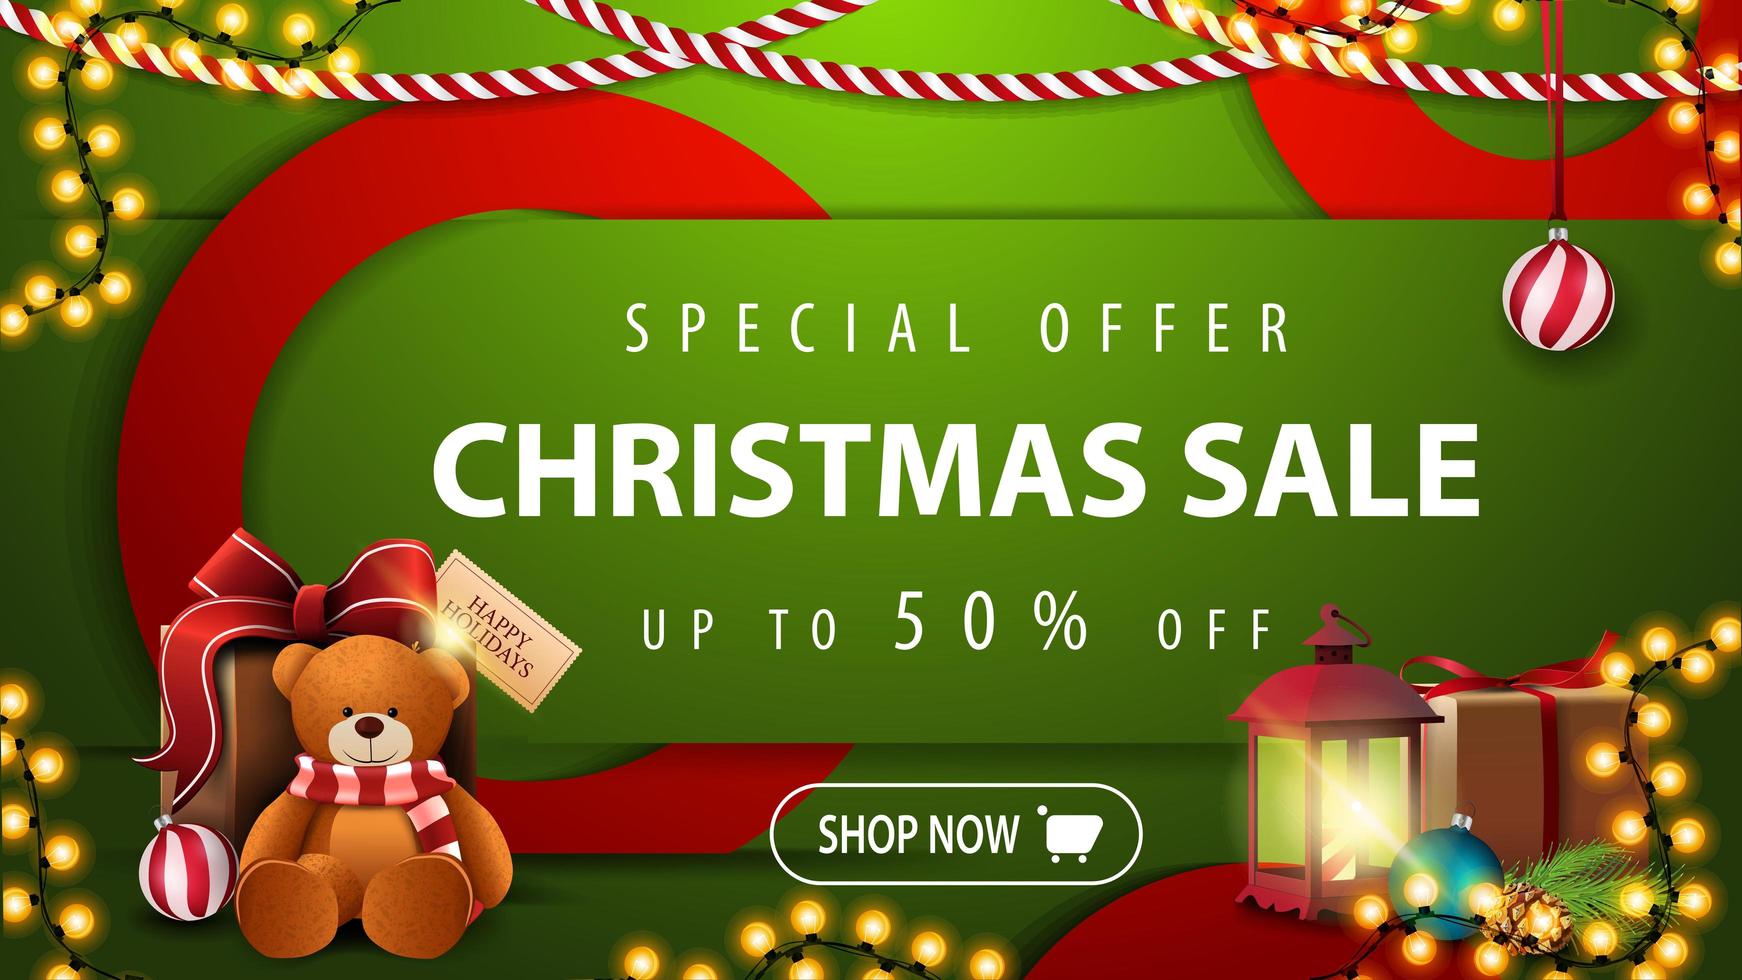 speciale aanbieding, kerstuitverkoop, tot 50 korting, groene heldere horizontale moderne webbanner met knop, grote rode cirkels, antieke lamp en cadeau met teddybeer vector